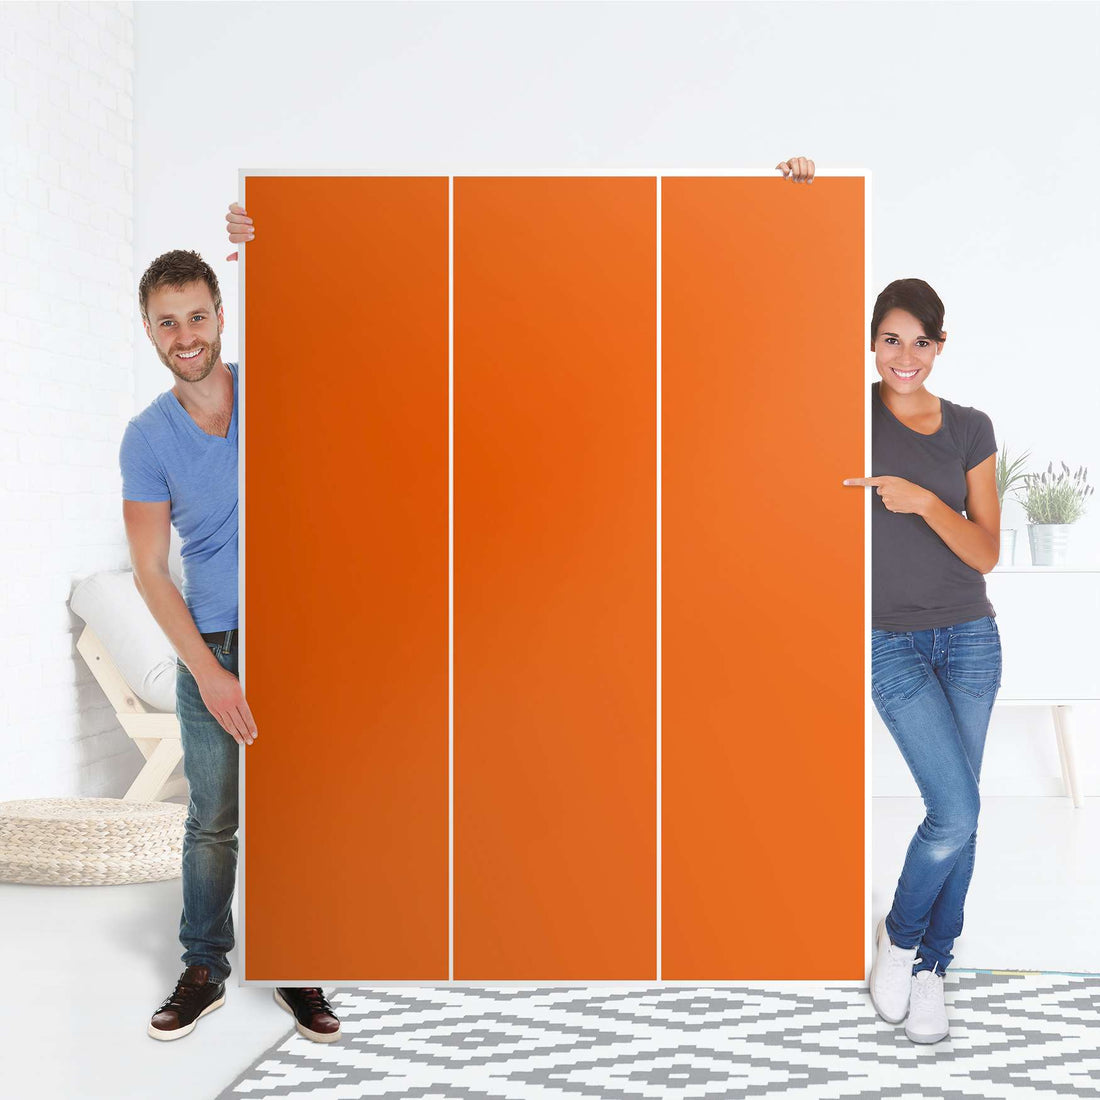 Folie für Möbel Orange Dark - IKEA Pax Schrank 201 cm Höhe - 3 Türen - Folie